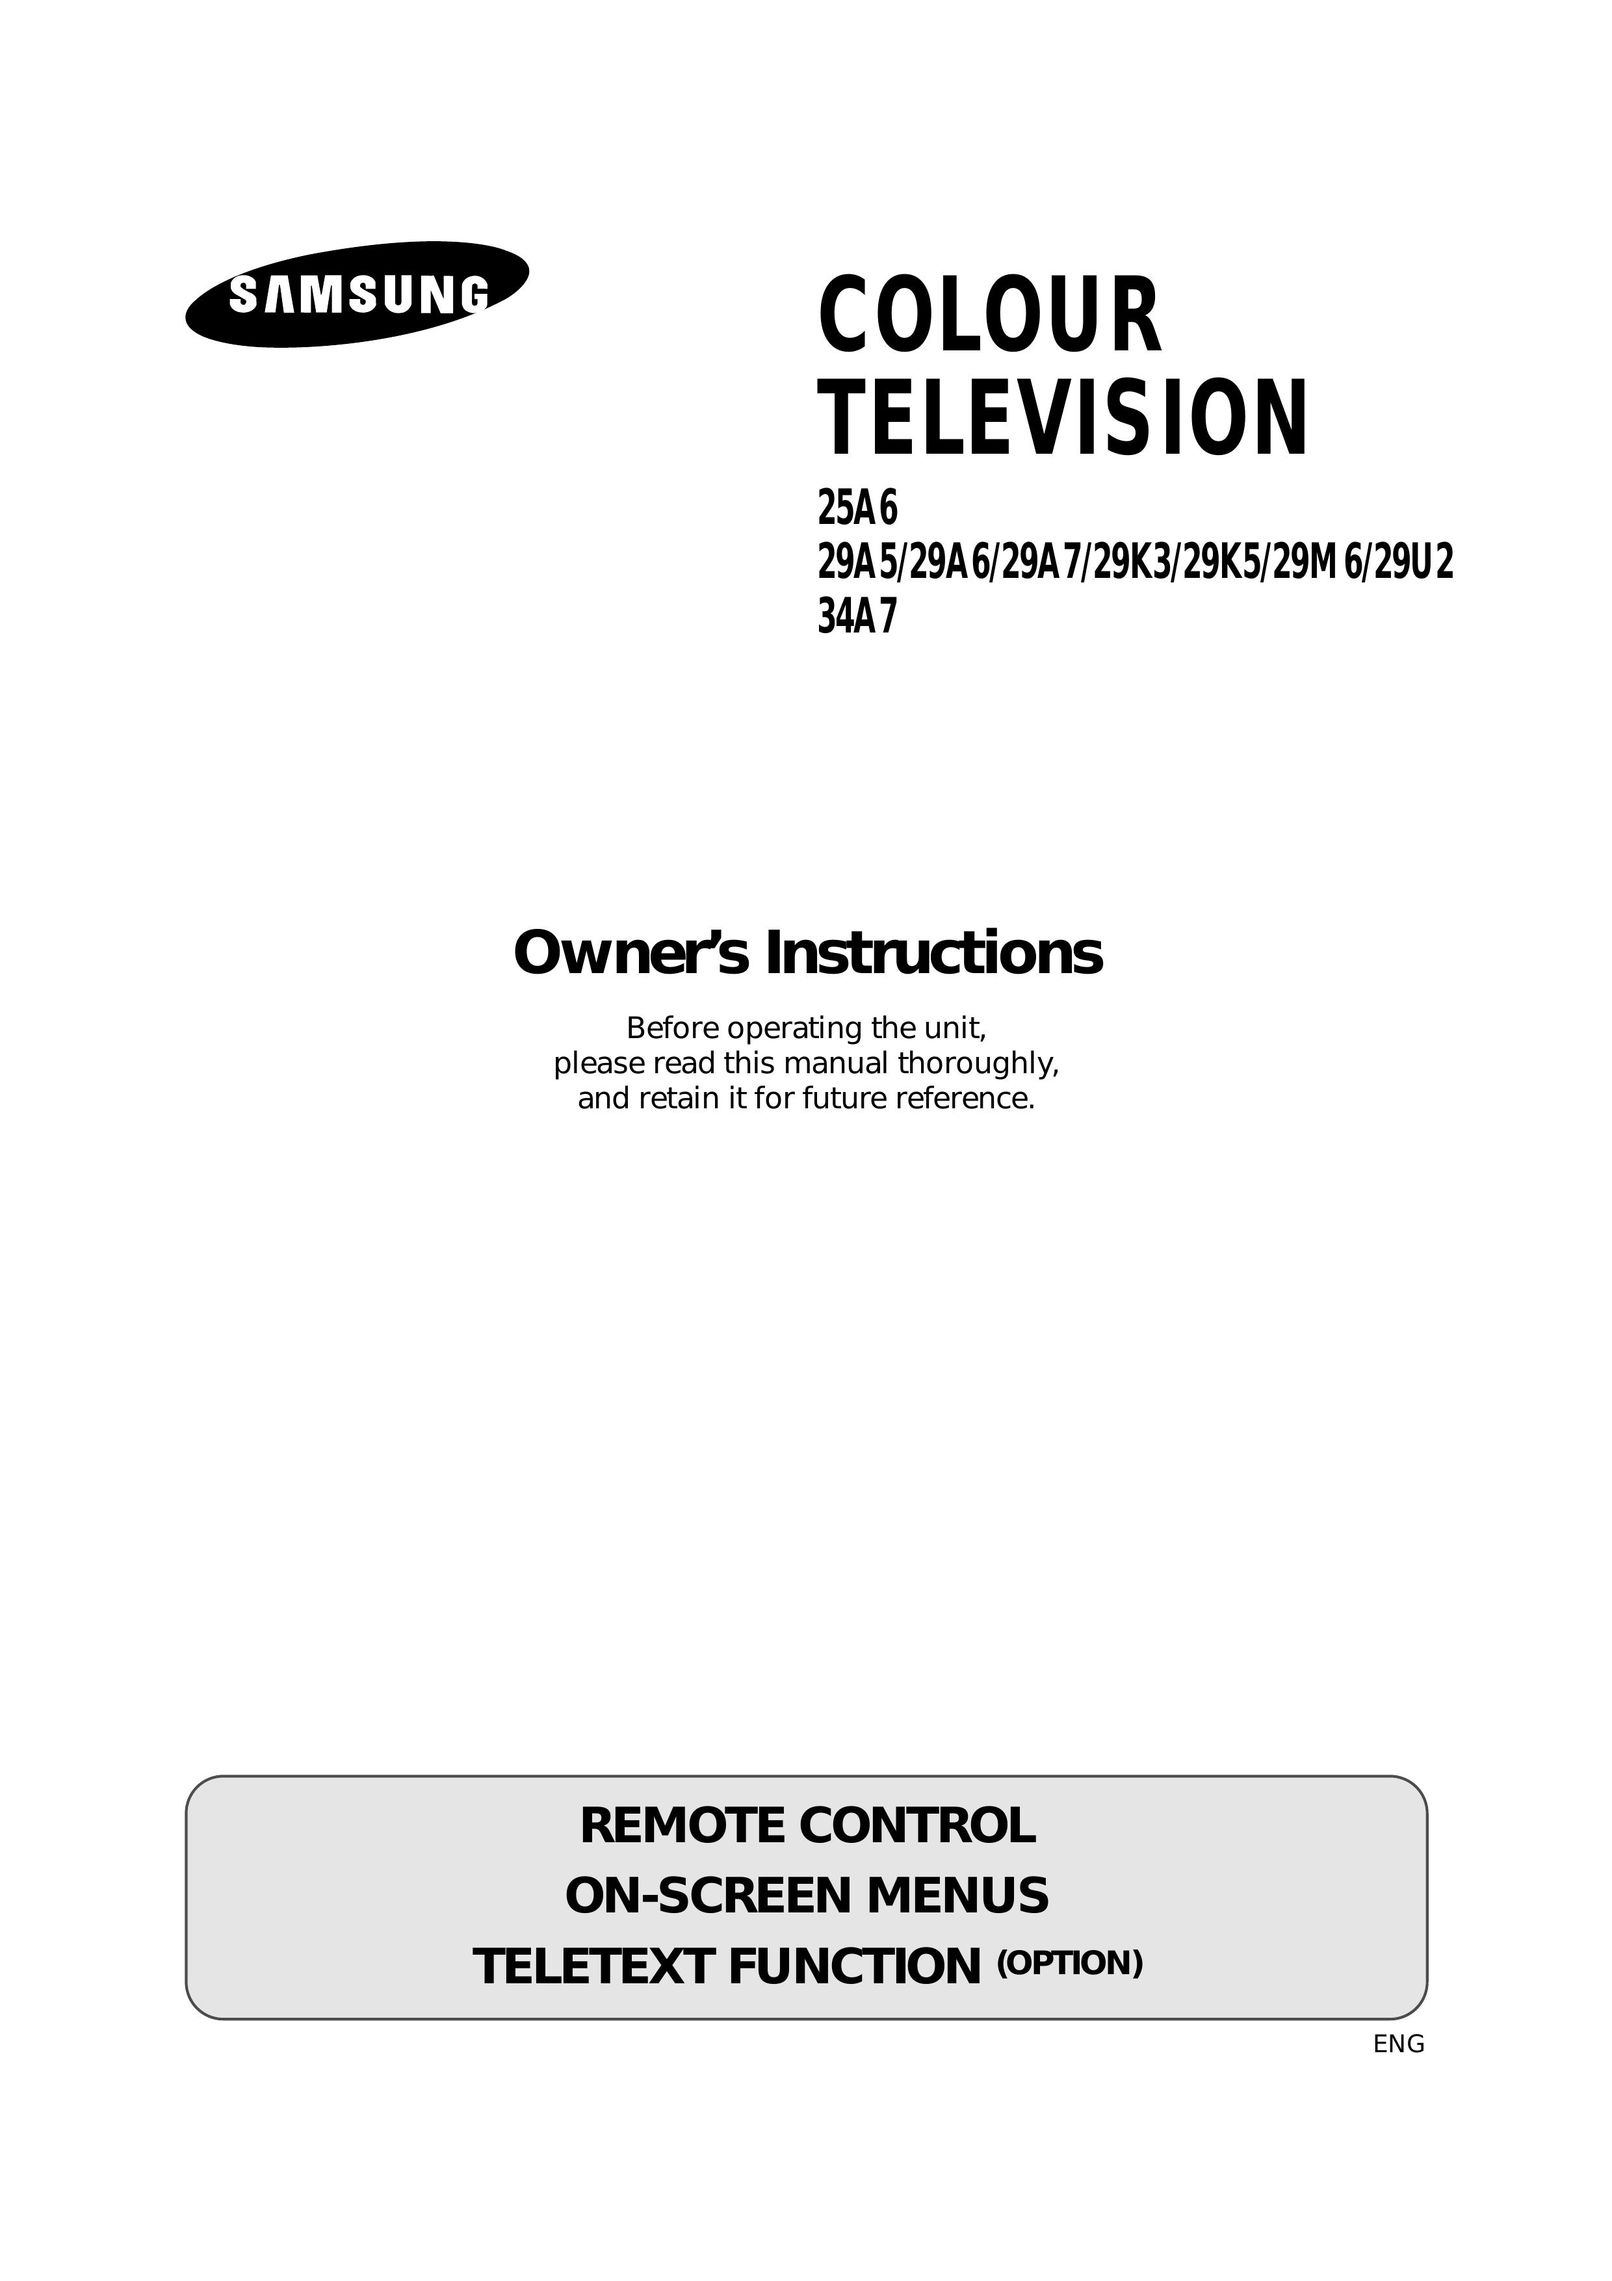 Samsung 25A6, 29A5, 29A6, 29A7, 29K3, 29K5, 29M6, 29U2, 34A7 CRT Television User Manual